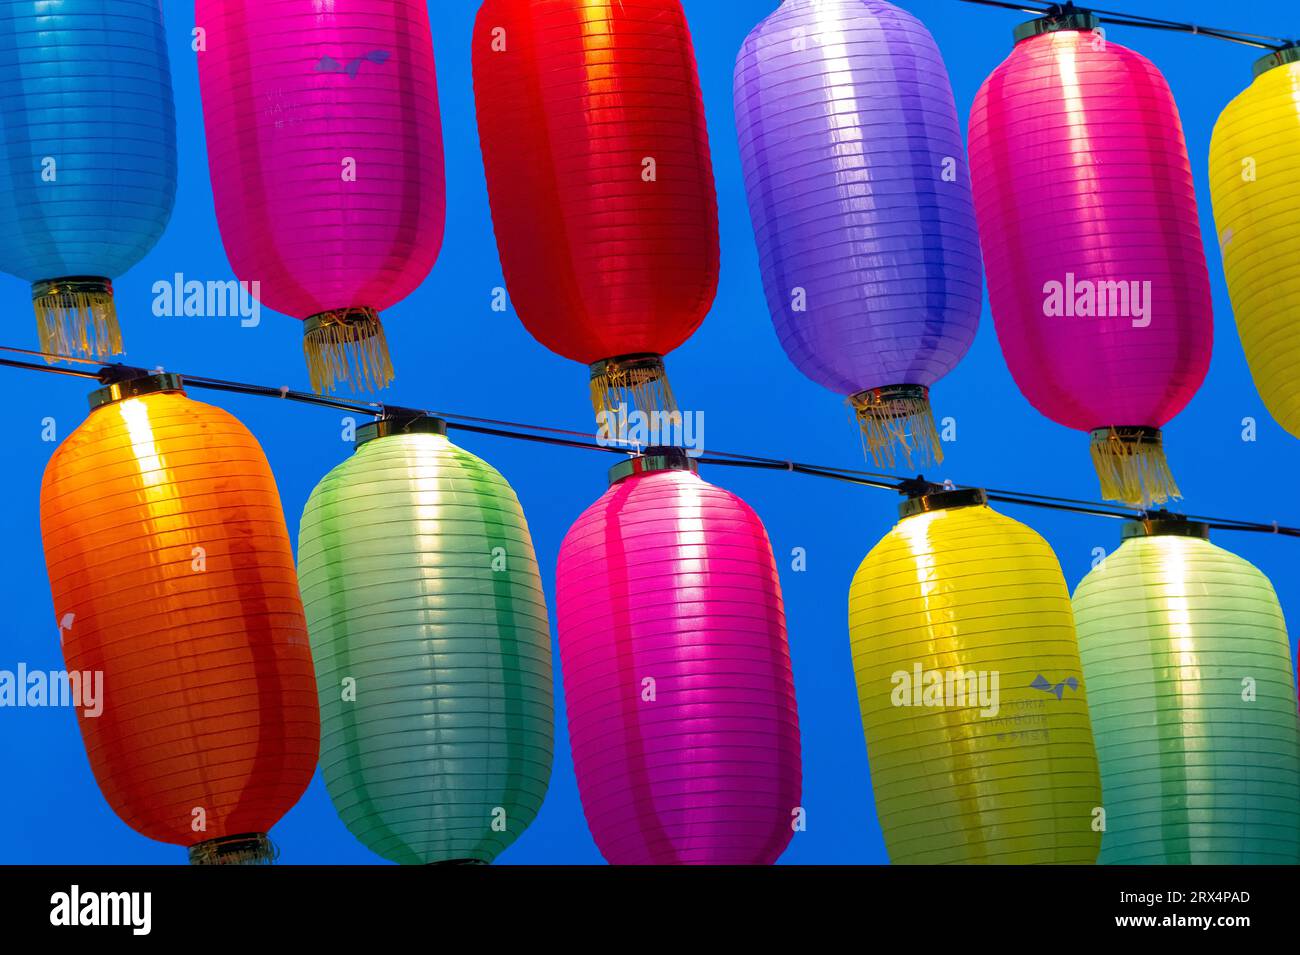 Hong Kong Mid Autumn Lantern festival, Hong Kong, China. Stock Photo